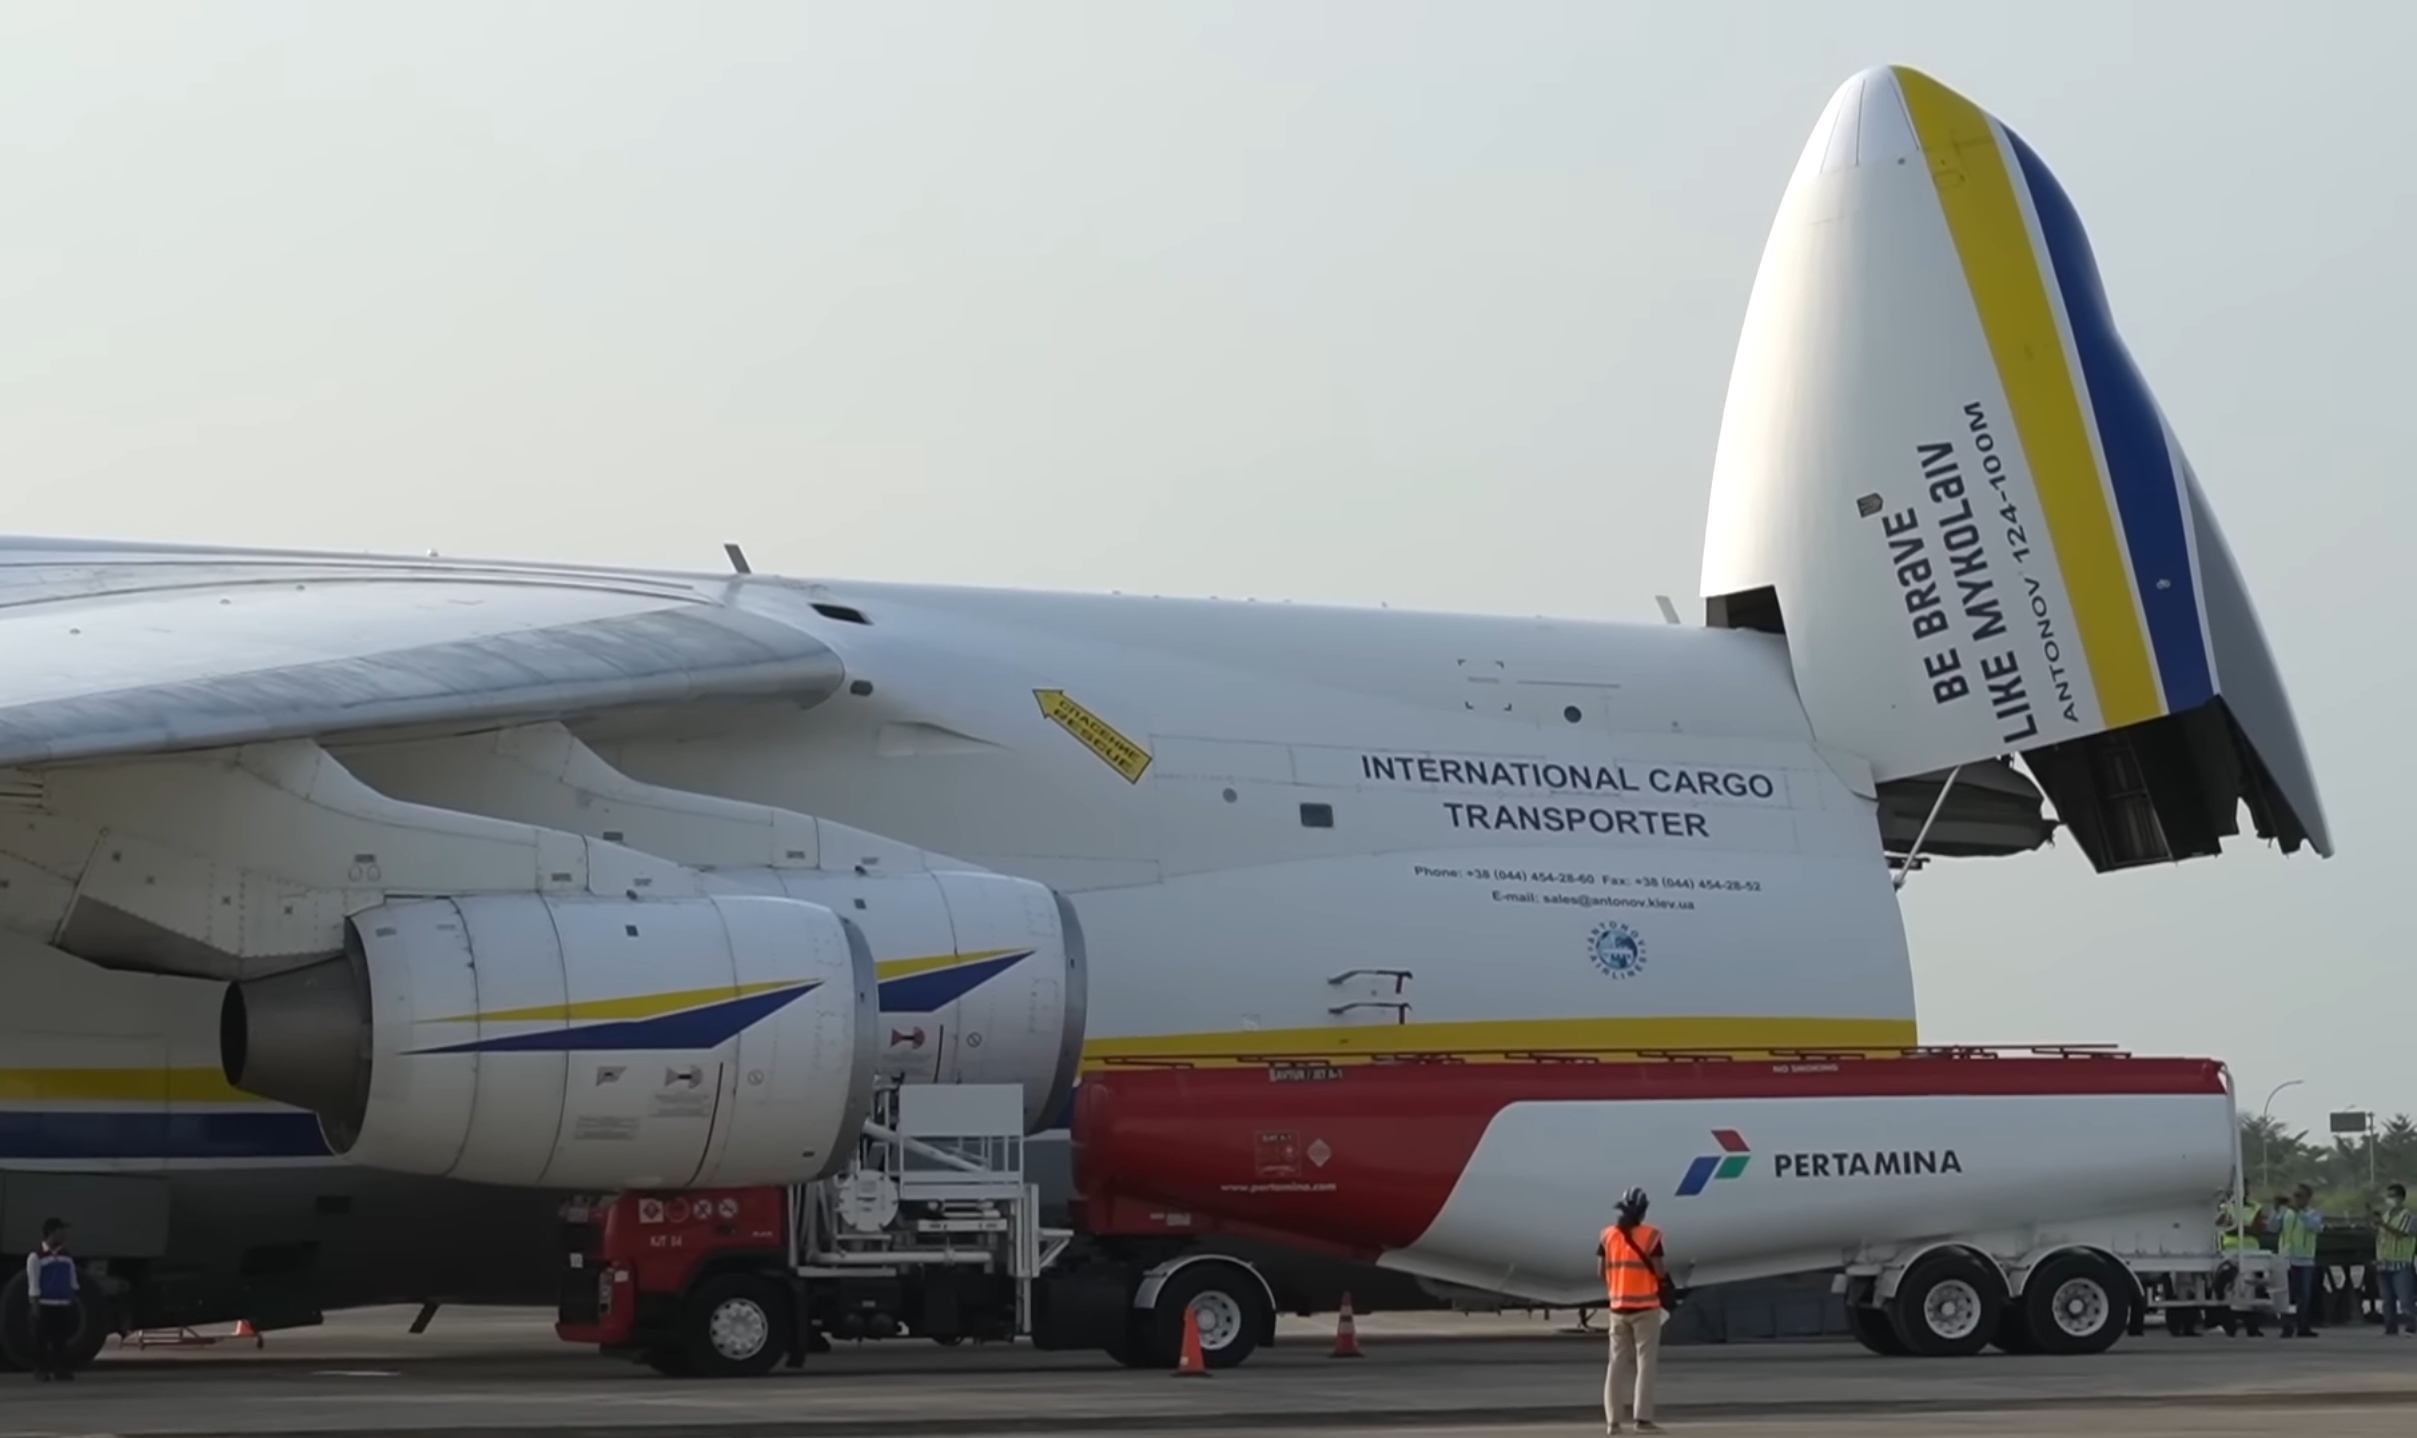 Saat Pesawat Antonov AN-124 Isi BBM di Bandara Kertajati Majalengka, Tangki Pertamina Merapat